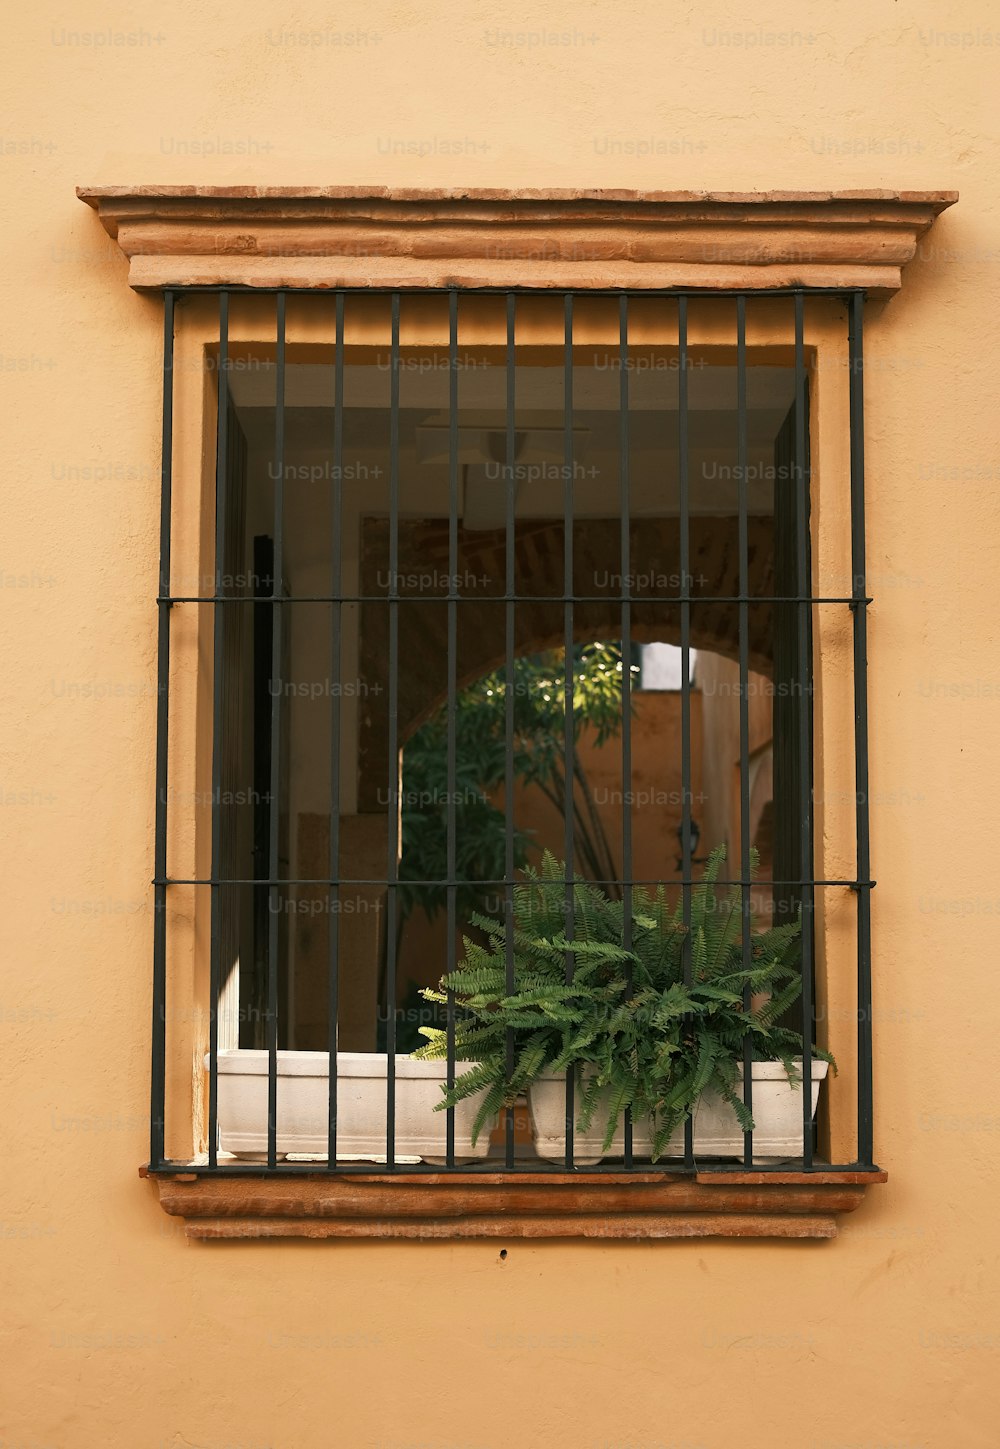 eine Topfpflanze, die auf einem Fensterbrett sitzt